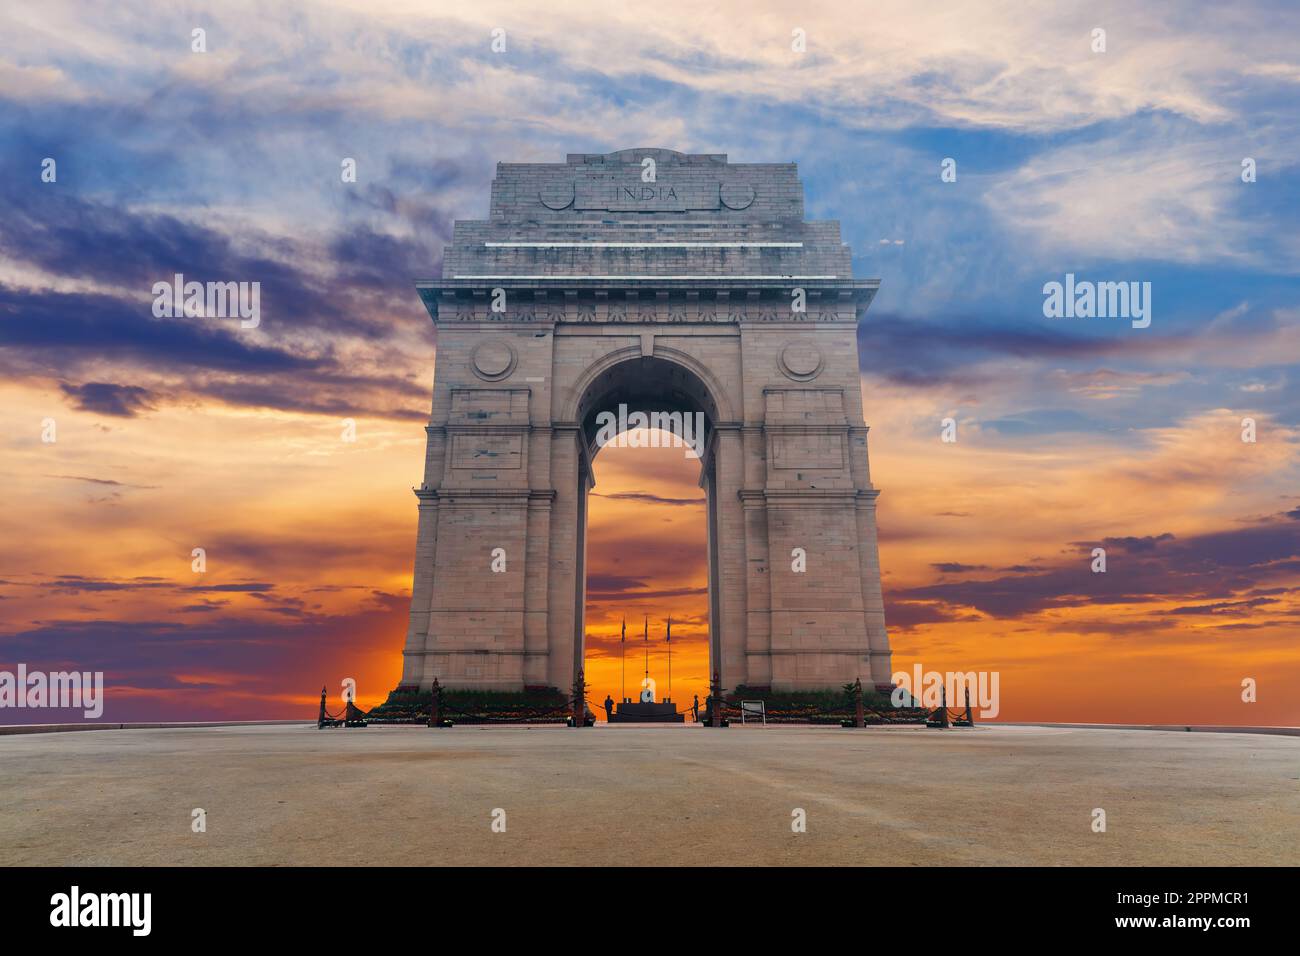 Coucher de soleil à la porte de l'Inde, célèbre monument de New Delhi Banque D'Images